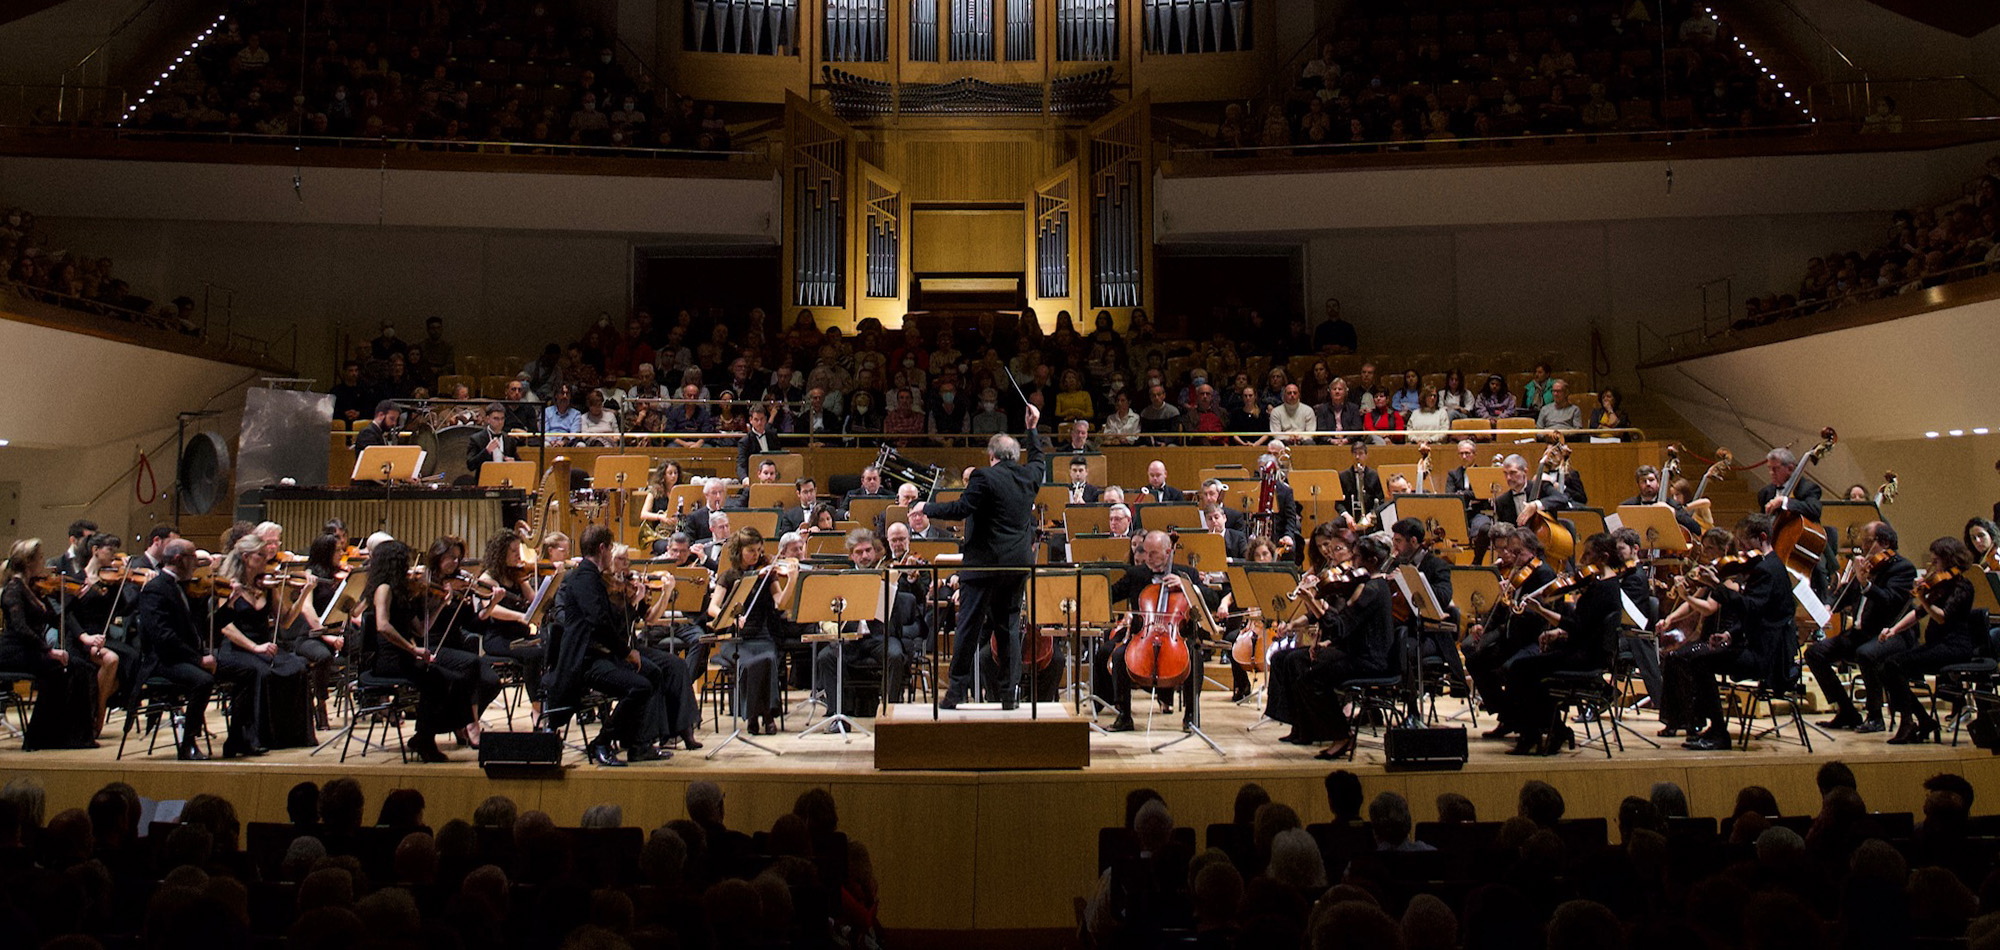 La Orquesta Nacional de España clausura el 40 Festival Ibérico de Música de Badajoz